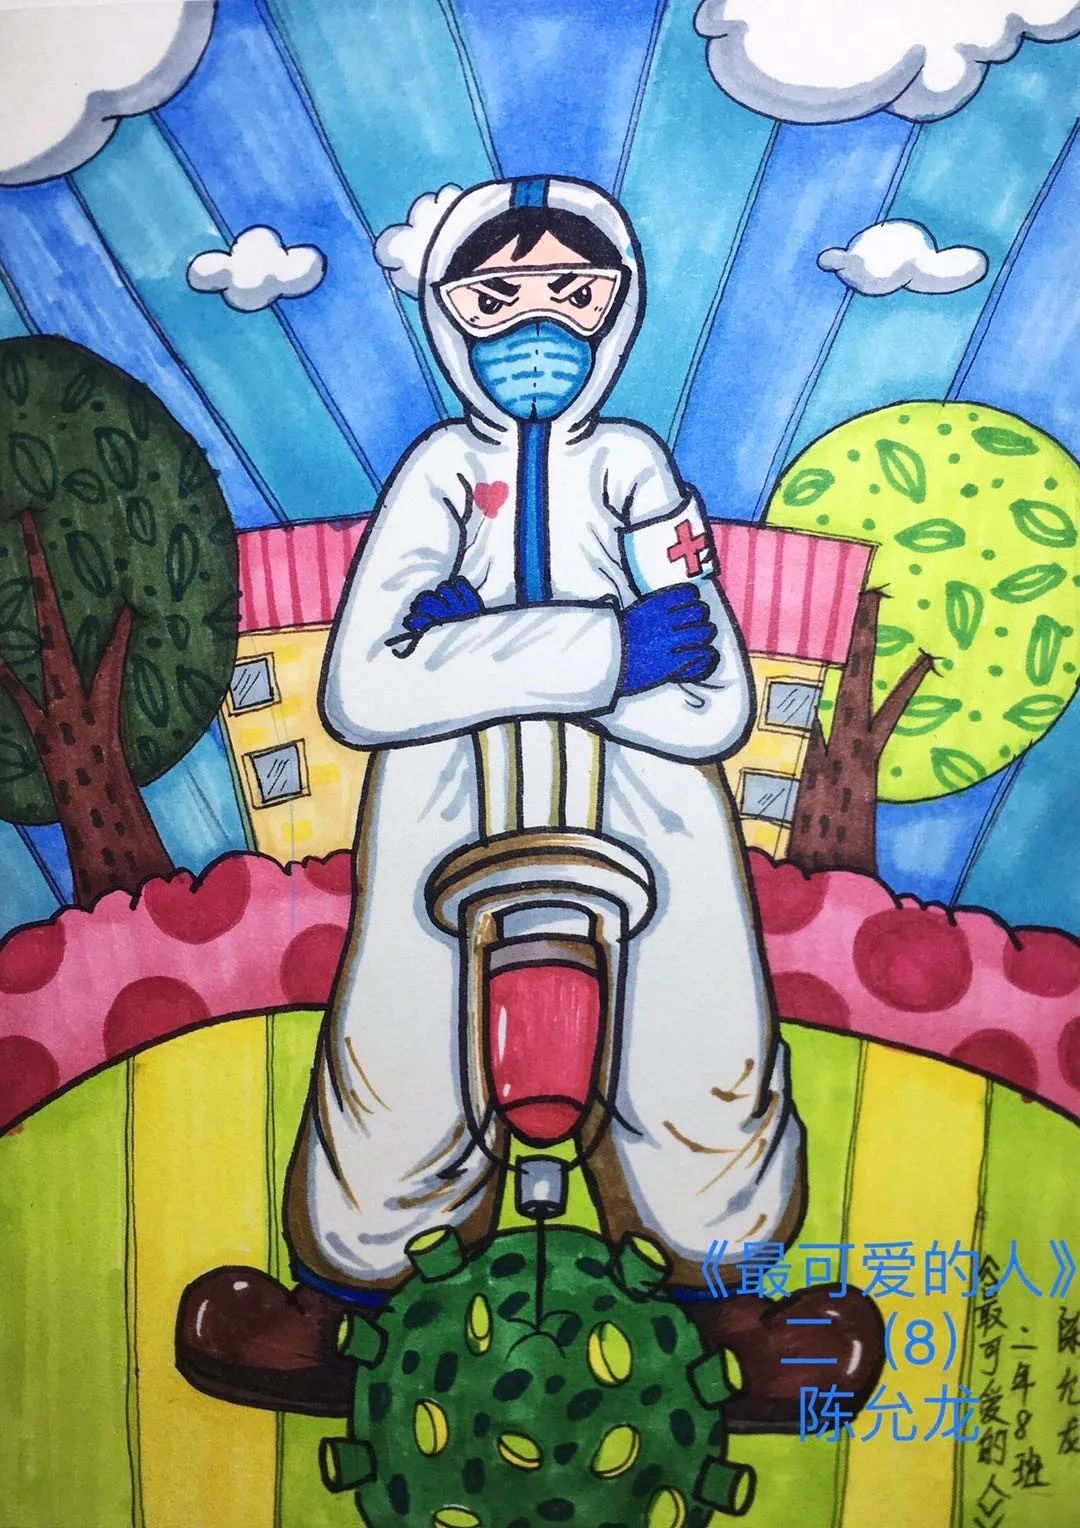 病疫无情,人间有爱——长乐区洞江小学 "防控抗击疫情"少儿主题绘画